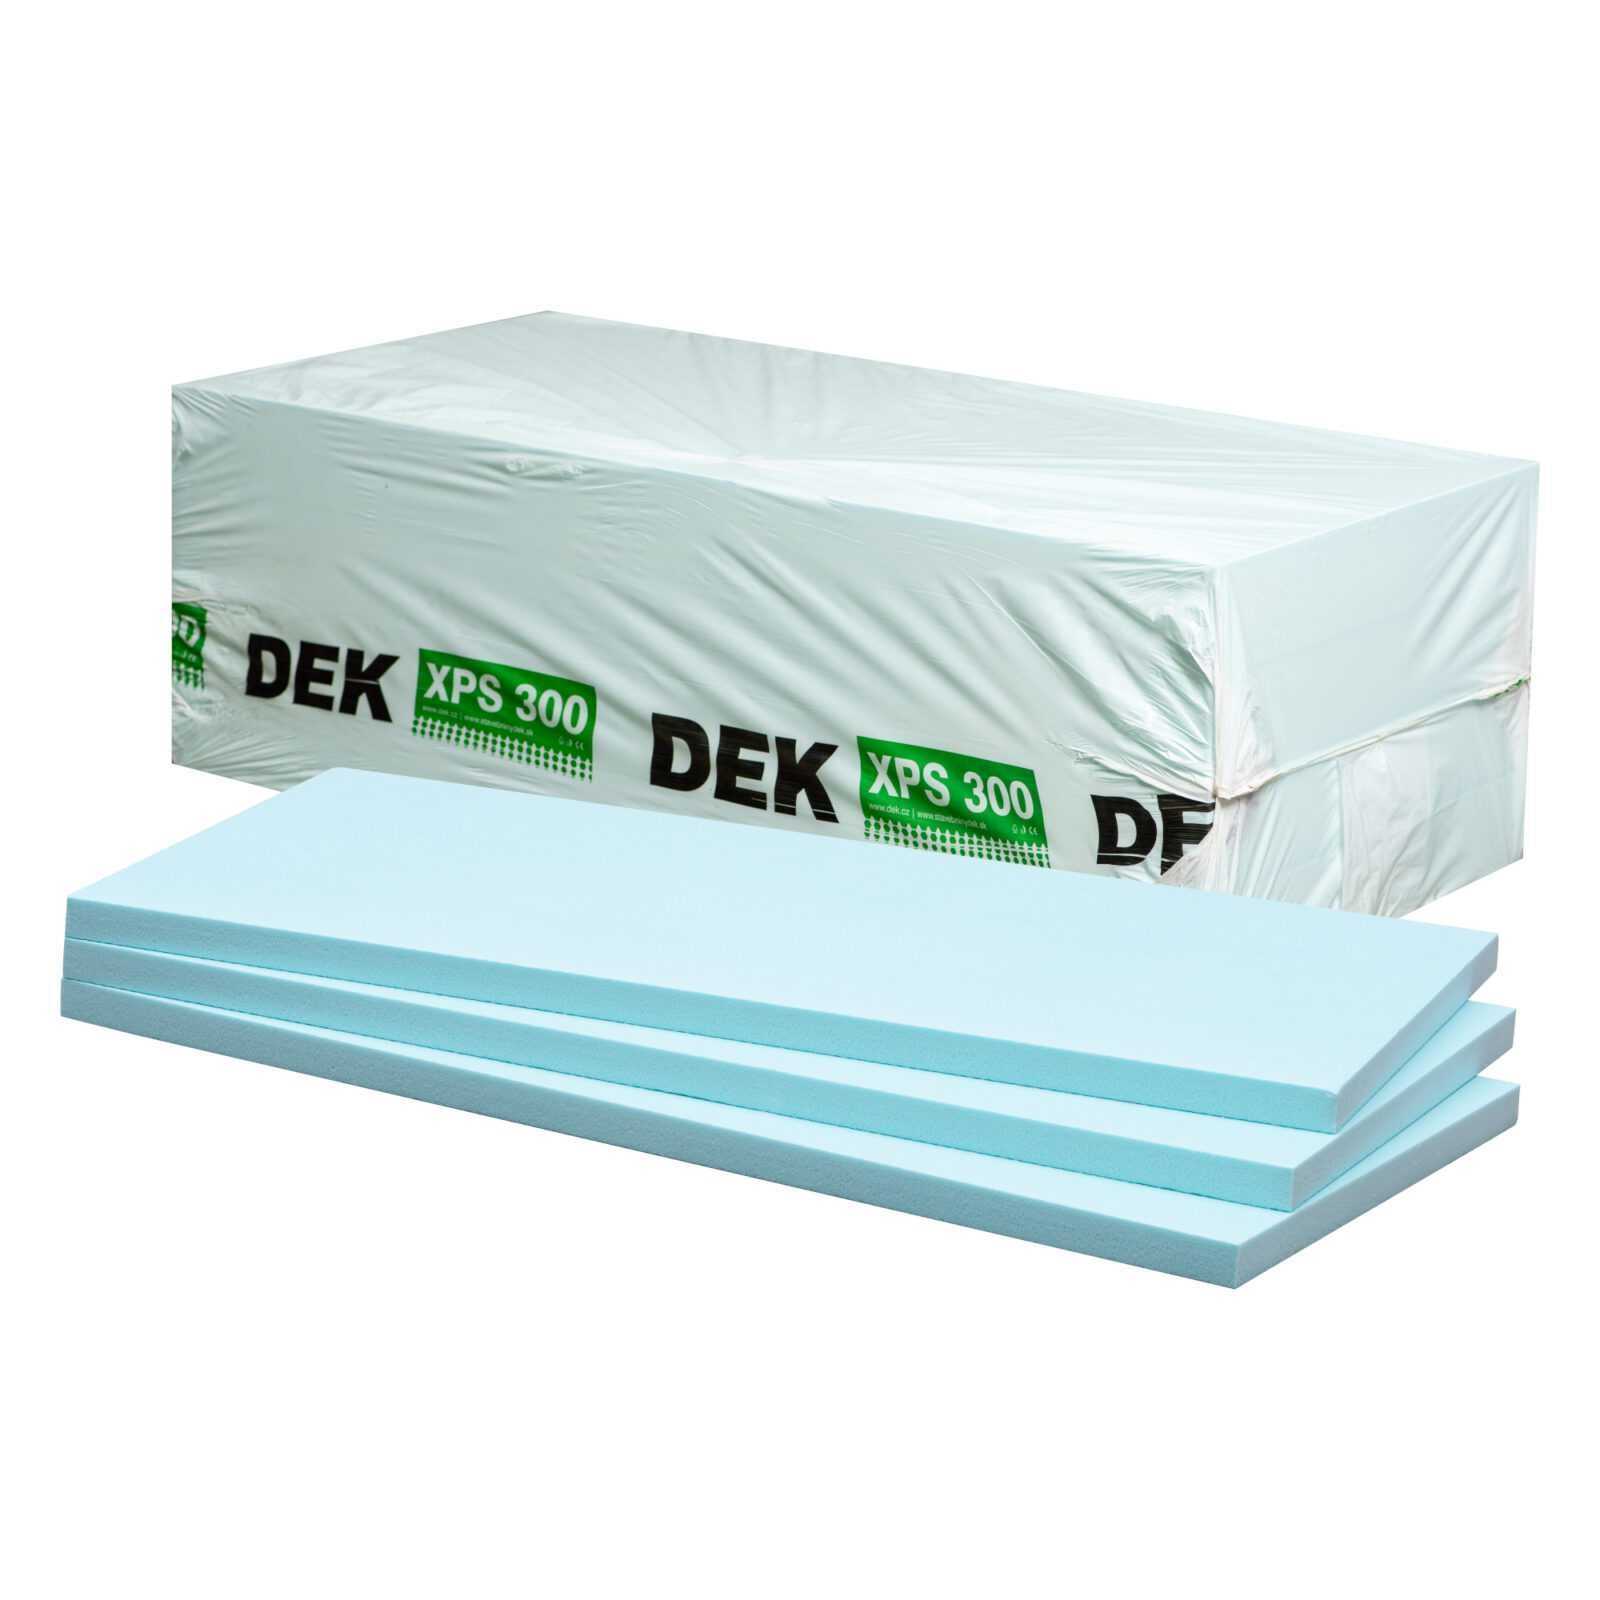 Tepelná izolace DEK XPS I 300 kPa 200 mm (1